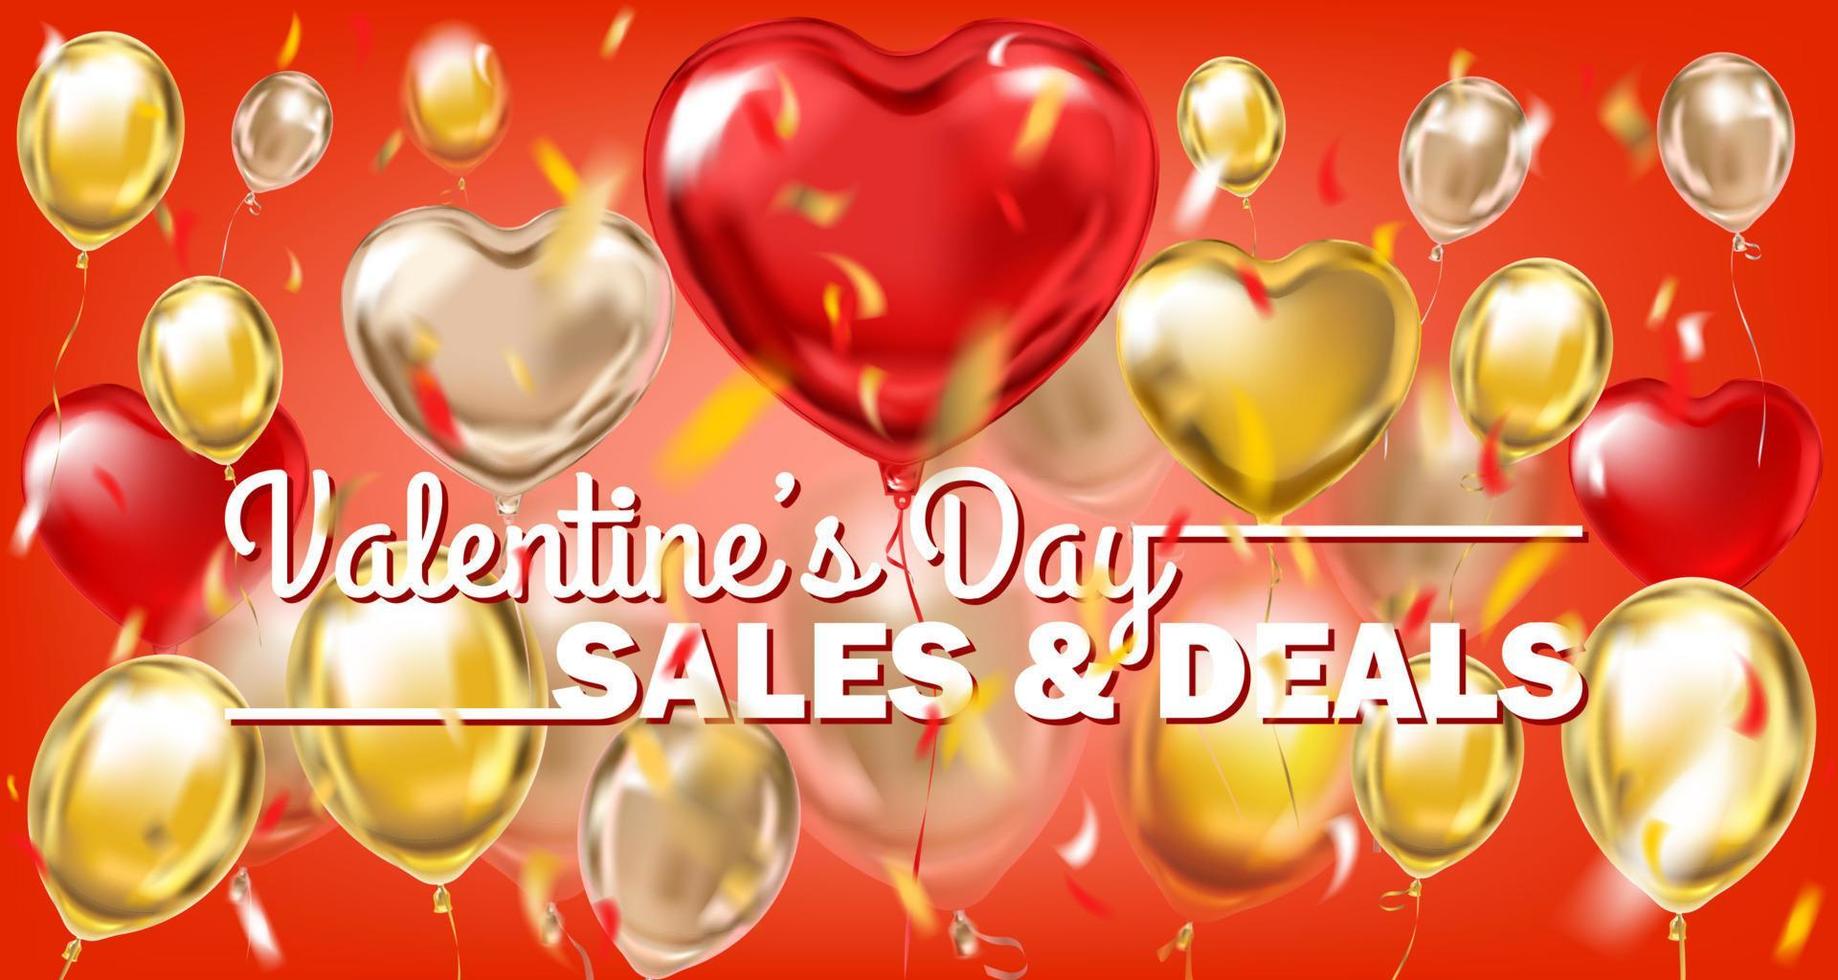 valentijnsdag dag verkoop en aanbiedingen rood goud banier met metalen ballonnen vector